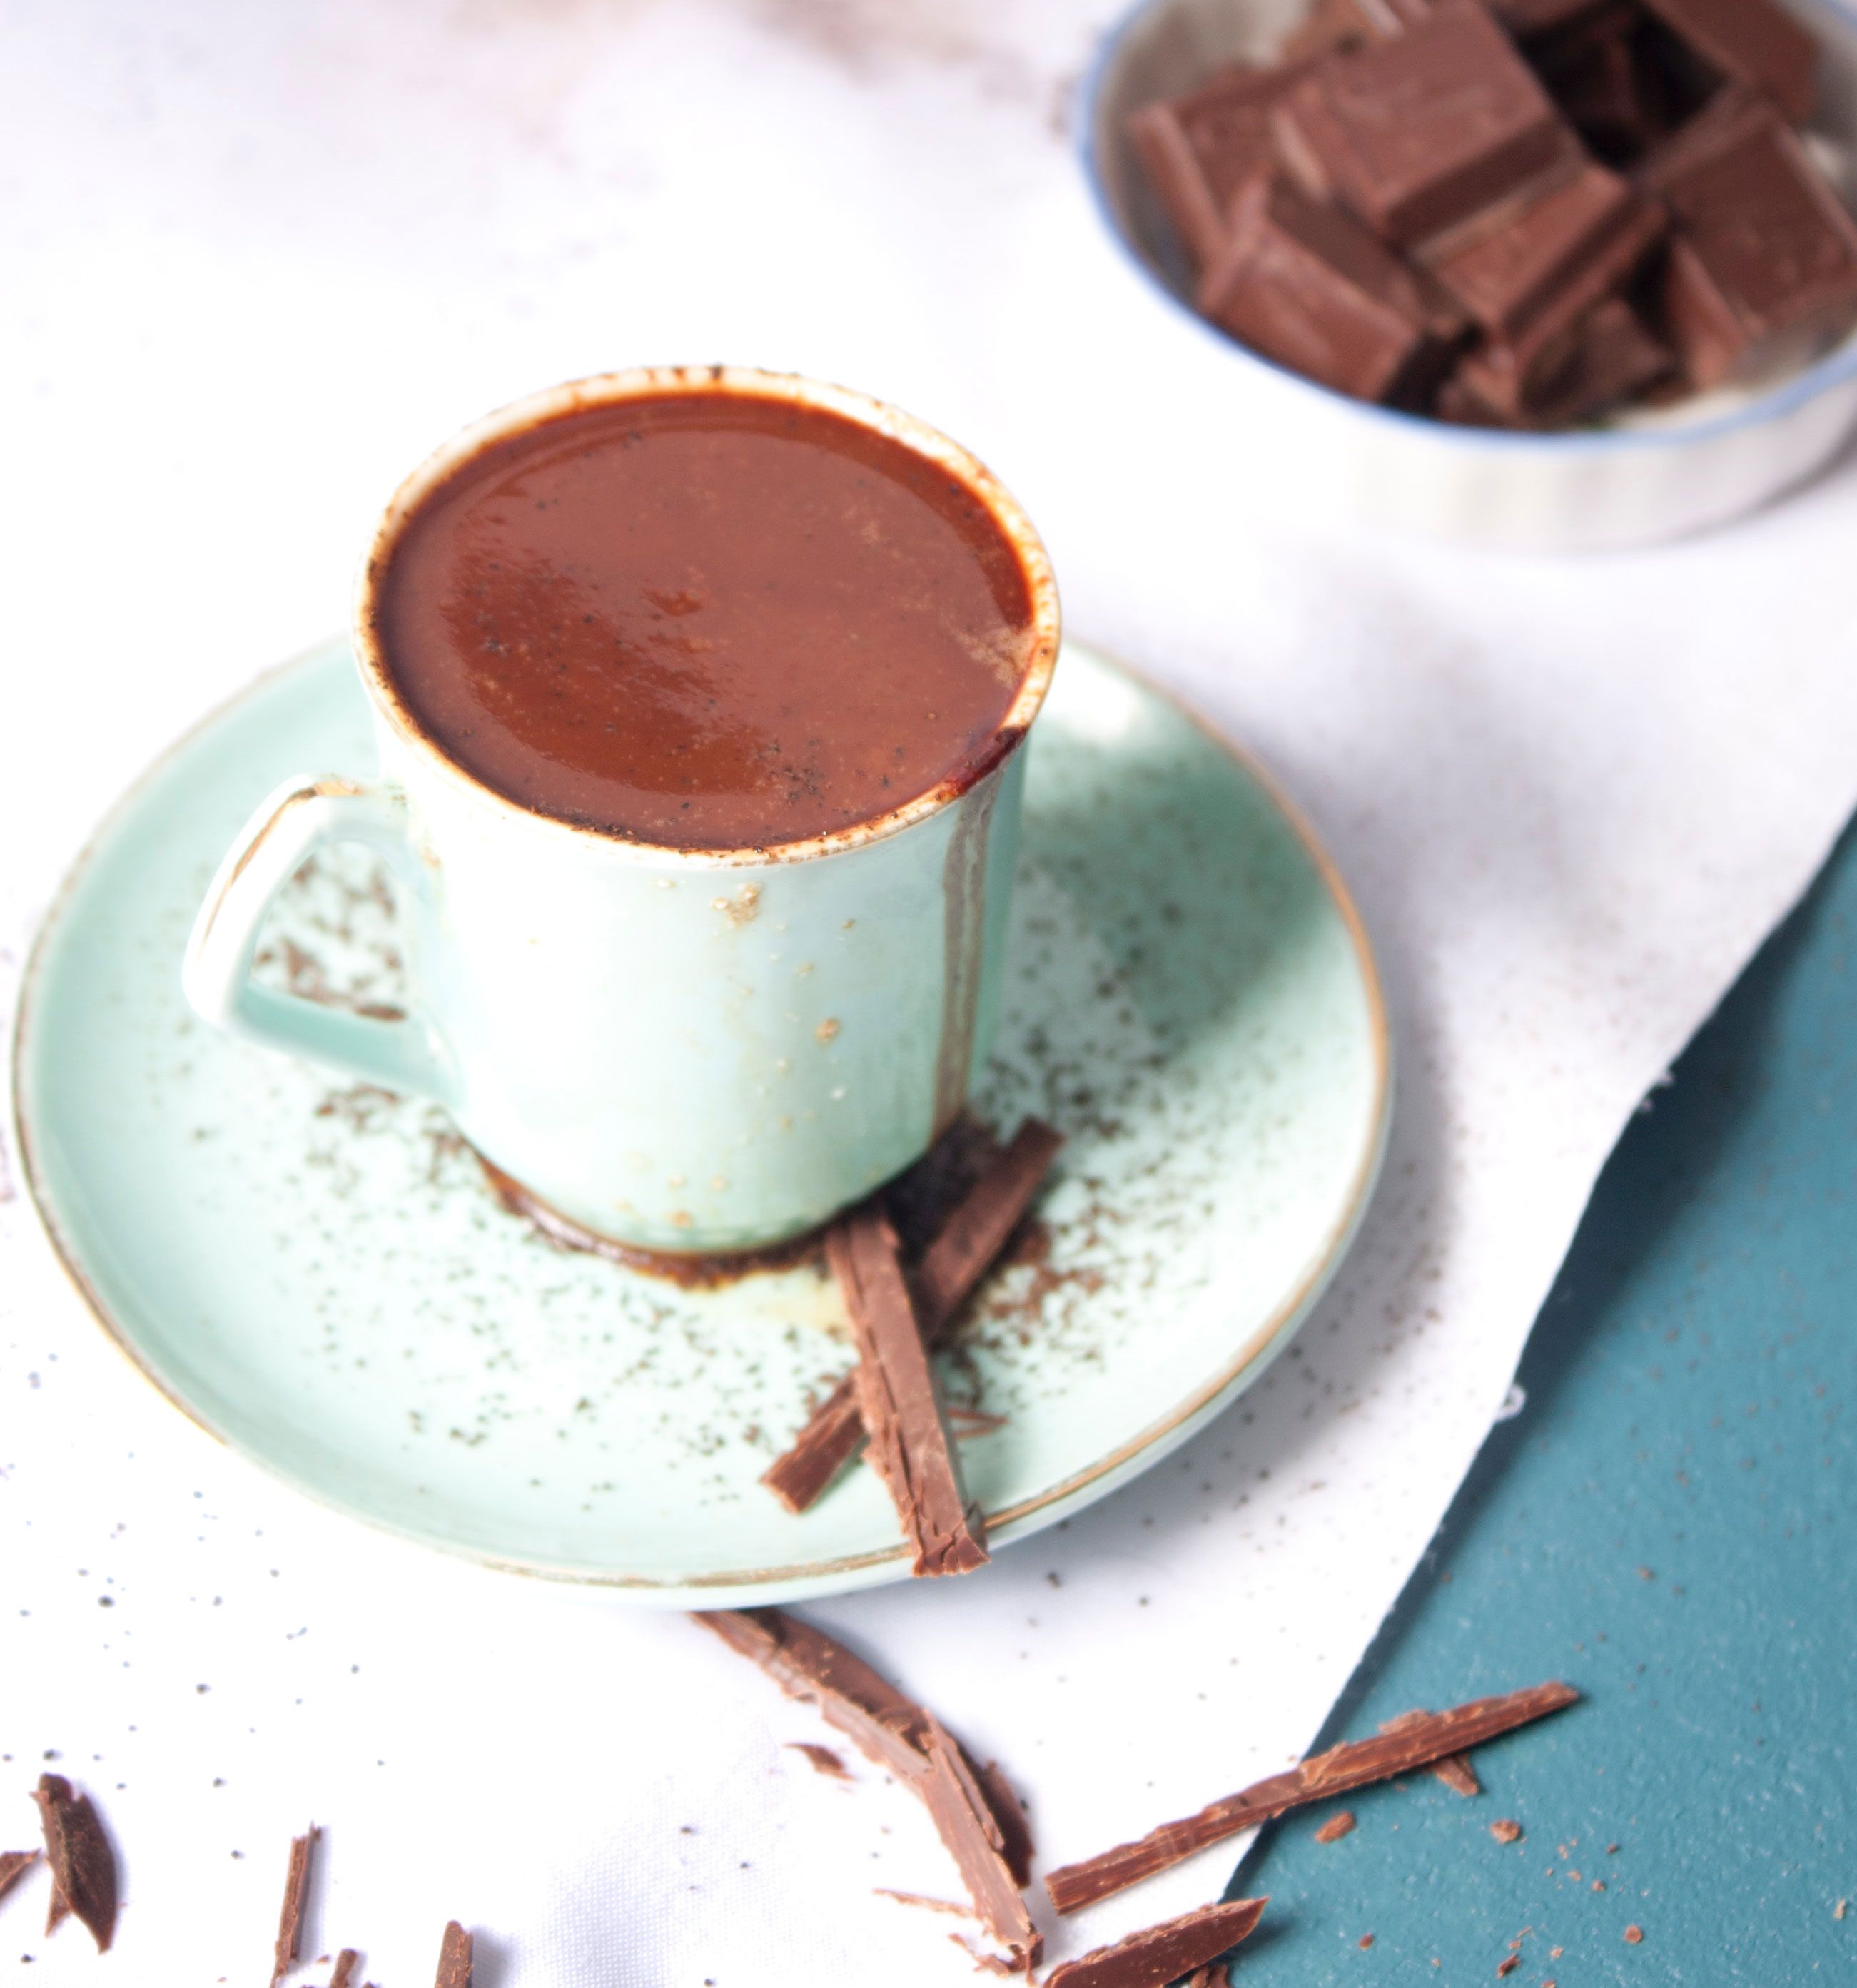 Schokolade verwerten: Als heiße Trinkschokolade